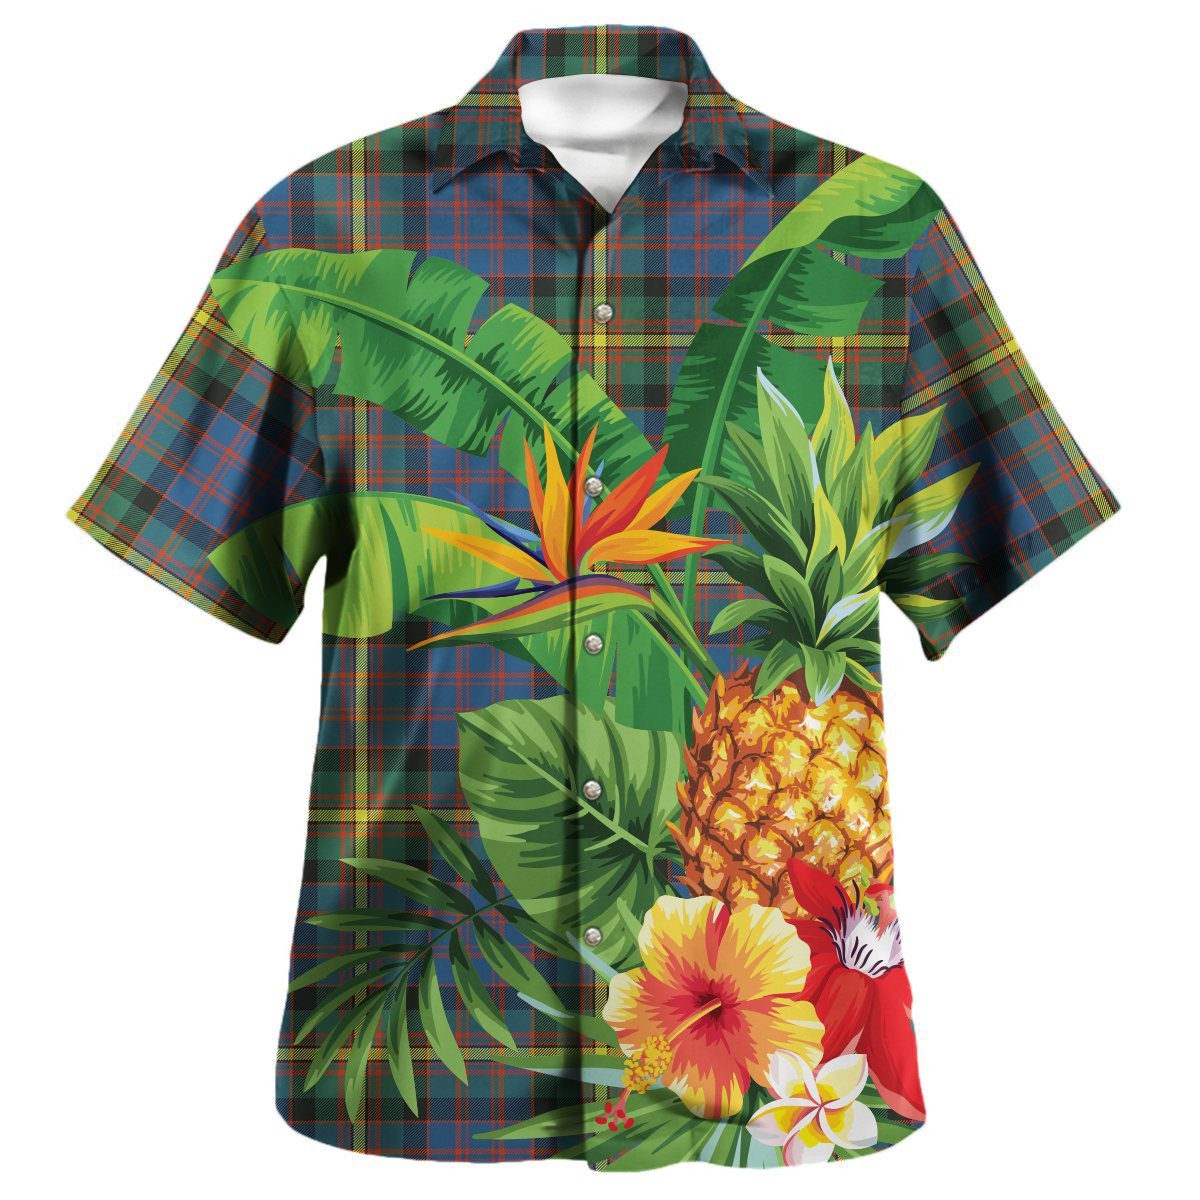 MacSporran Ancient Tartan Aloha Shirt version 2